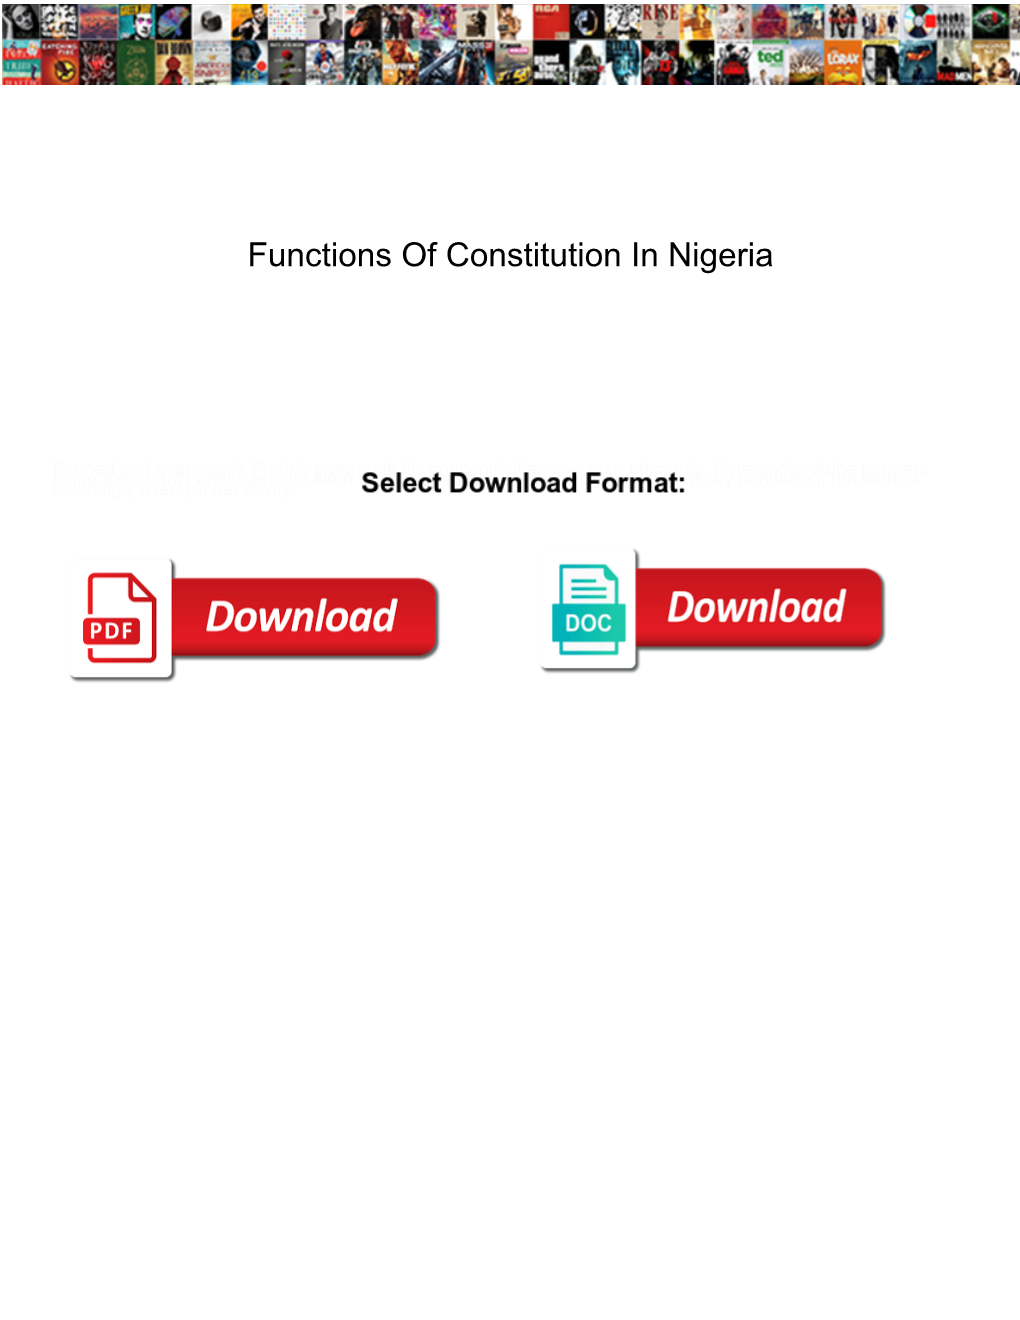 Functions of Constitution in Nigeria